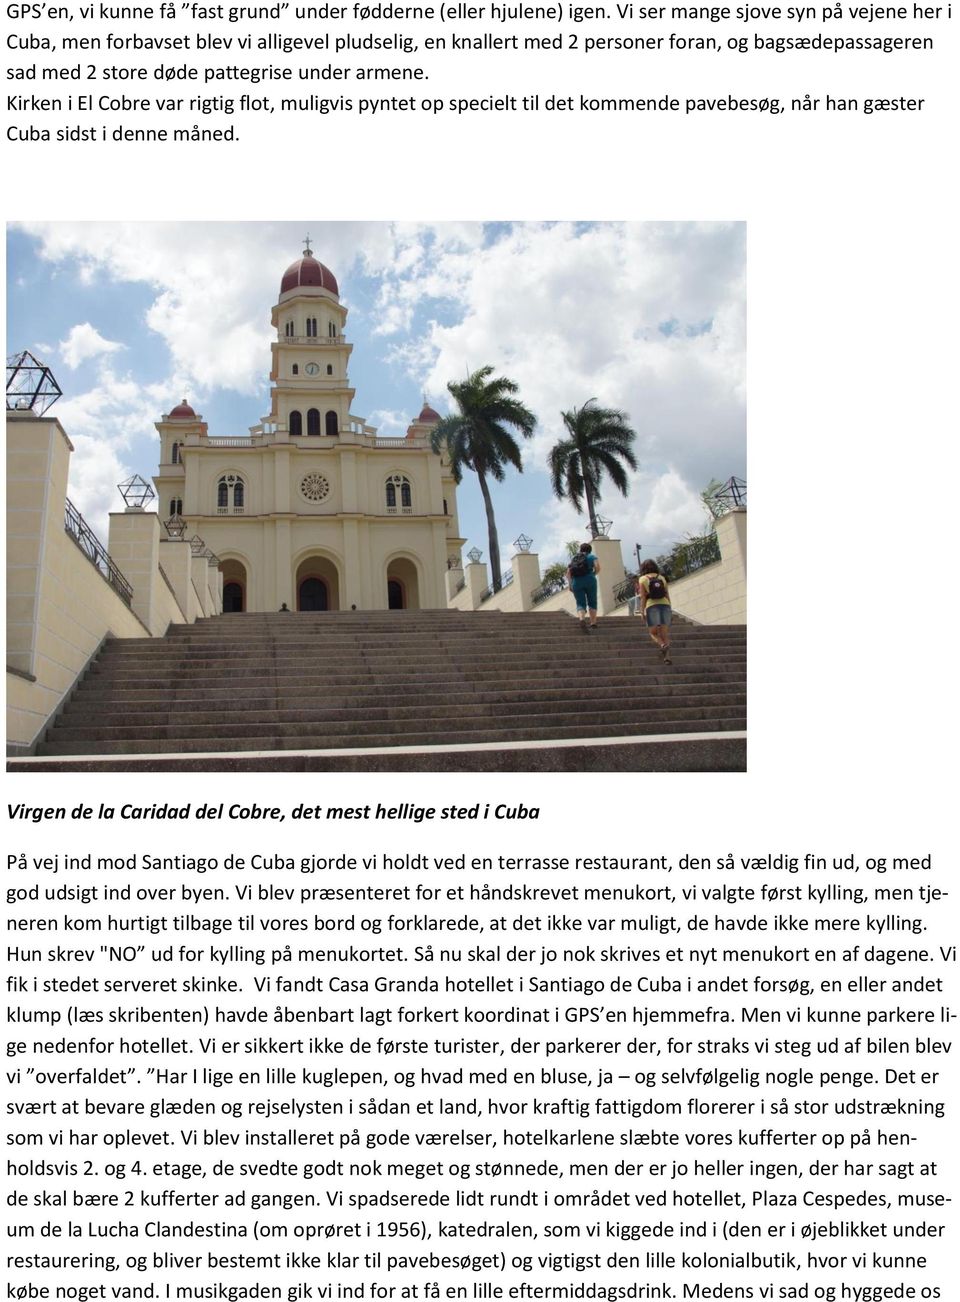 Kirken i El Cobre var rigtig flot, muligvis pyntet op specielt til det kommende pavebesøg, når han gæster Cuba sidst i denne måned.